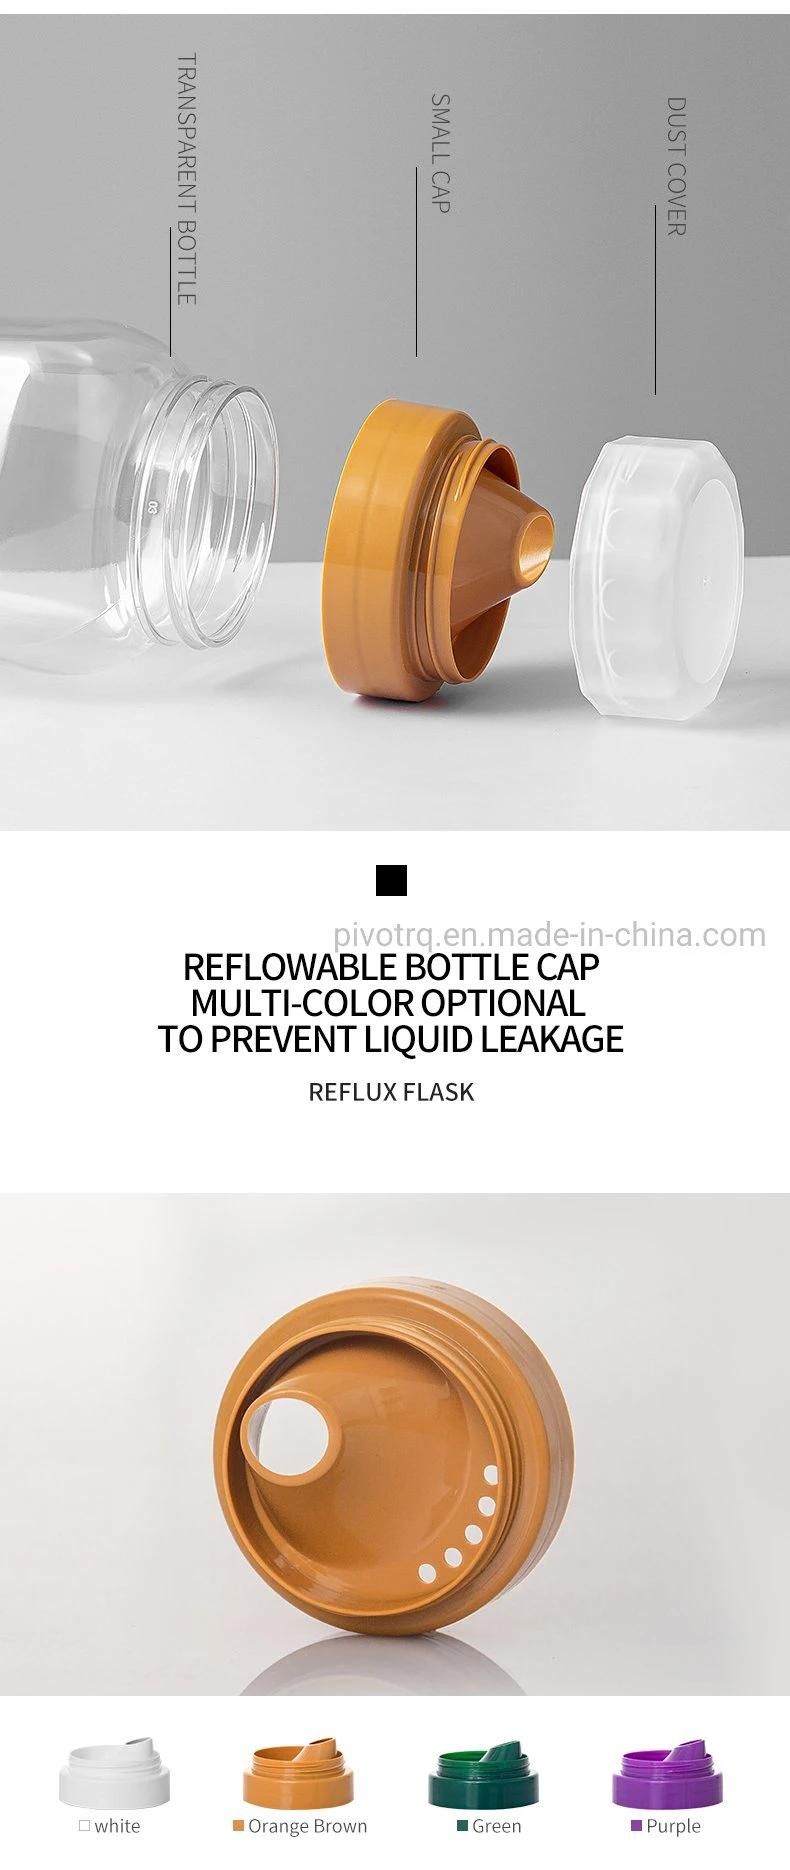 700g Clear Plastic Bottle for Honey Packaging Food Grade Honey Jars